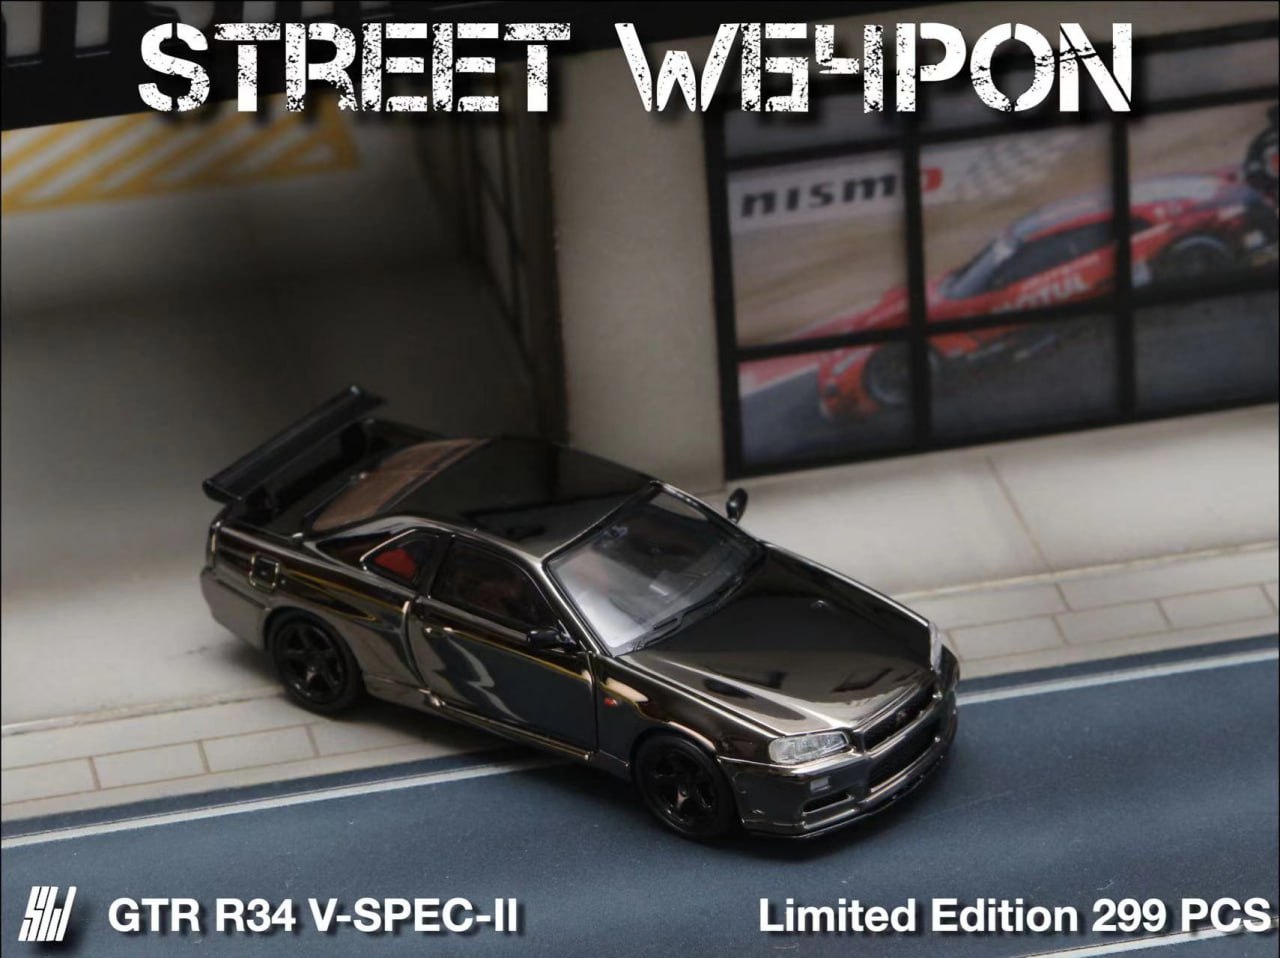 Street Warrior 1/64 GTR R34 V-SPEC-II Plated Version